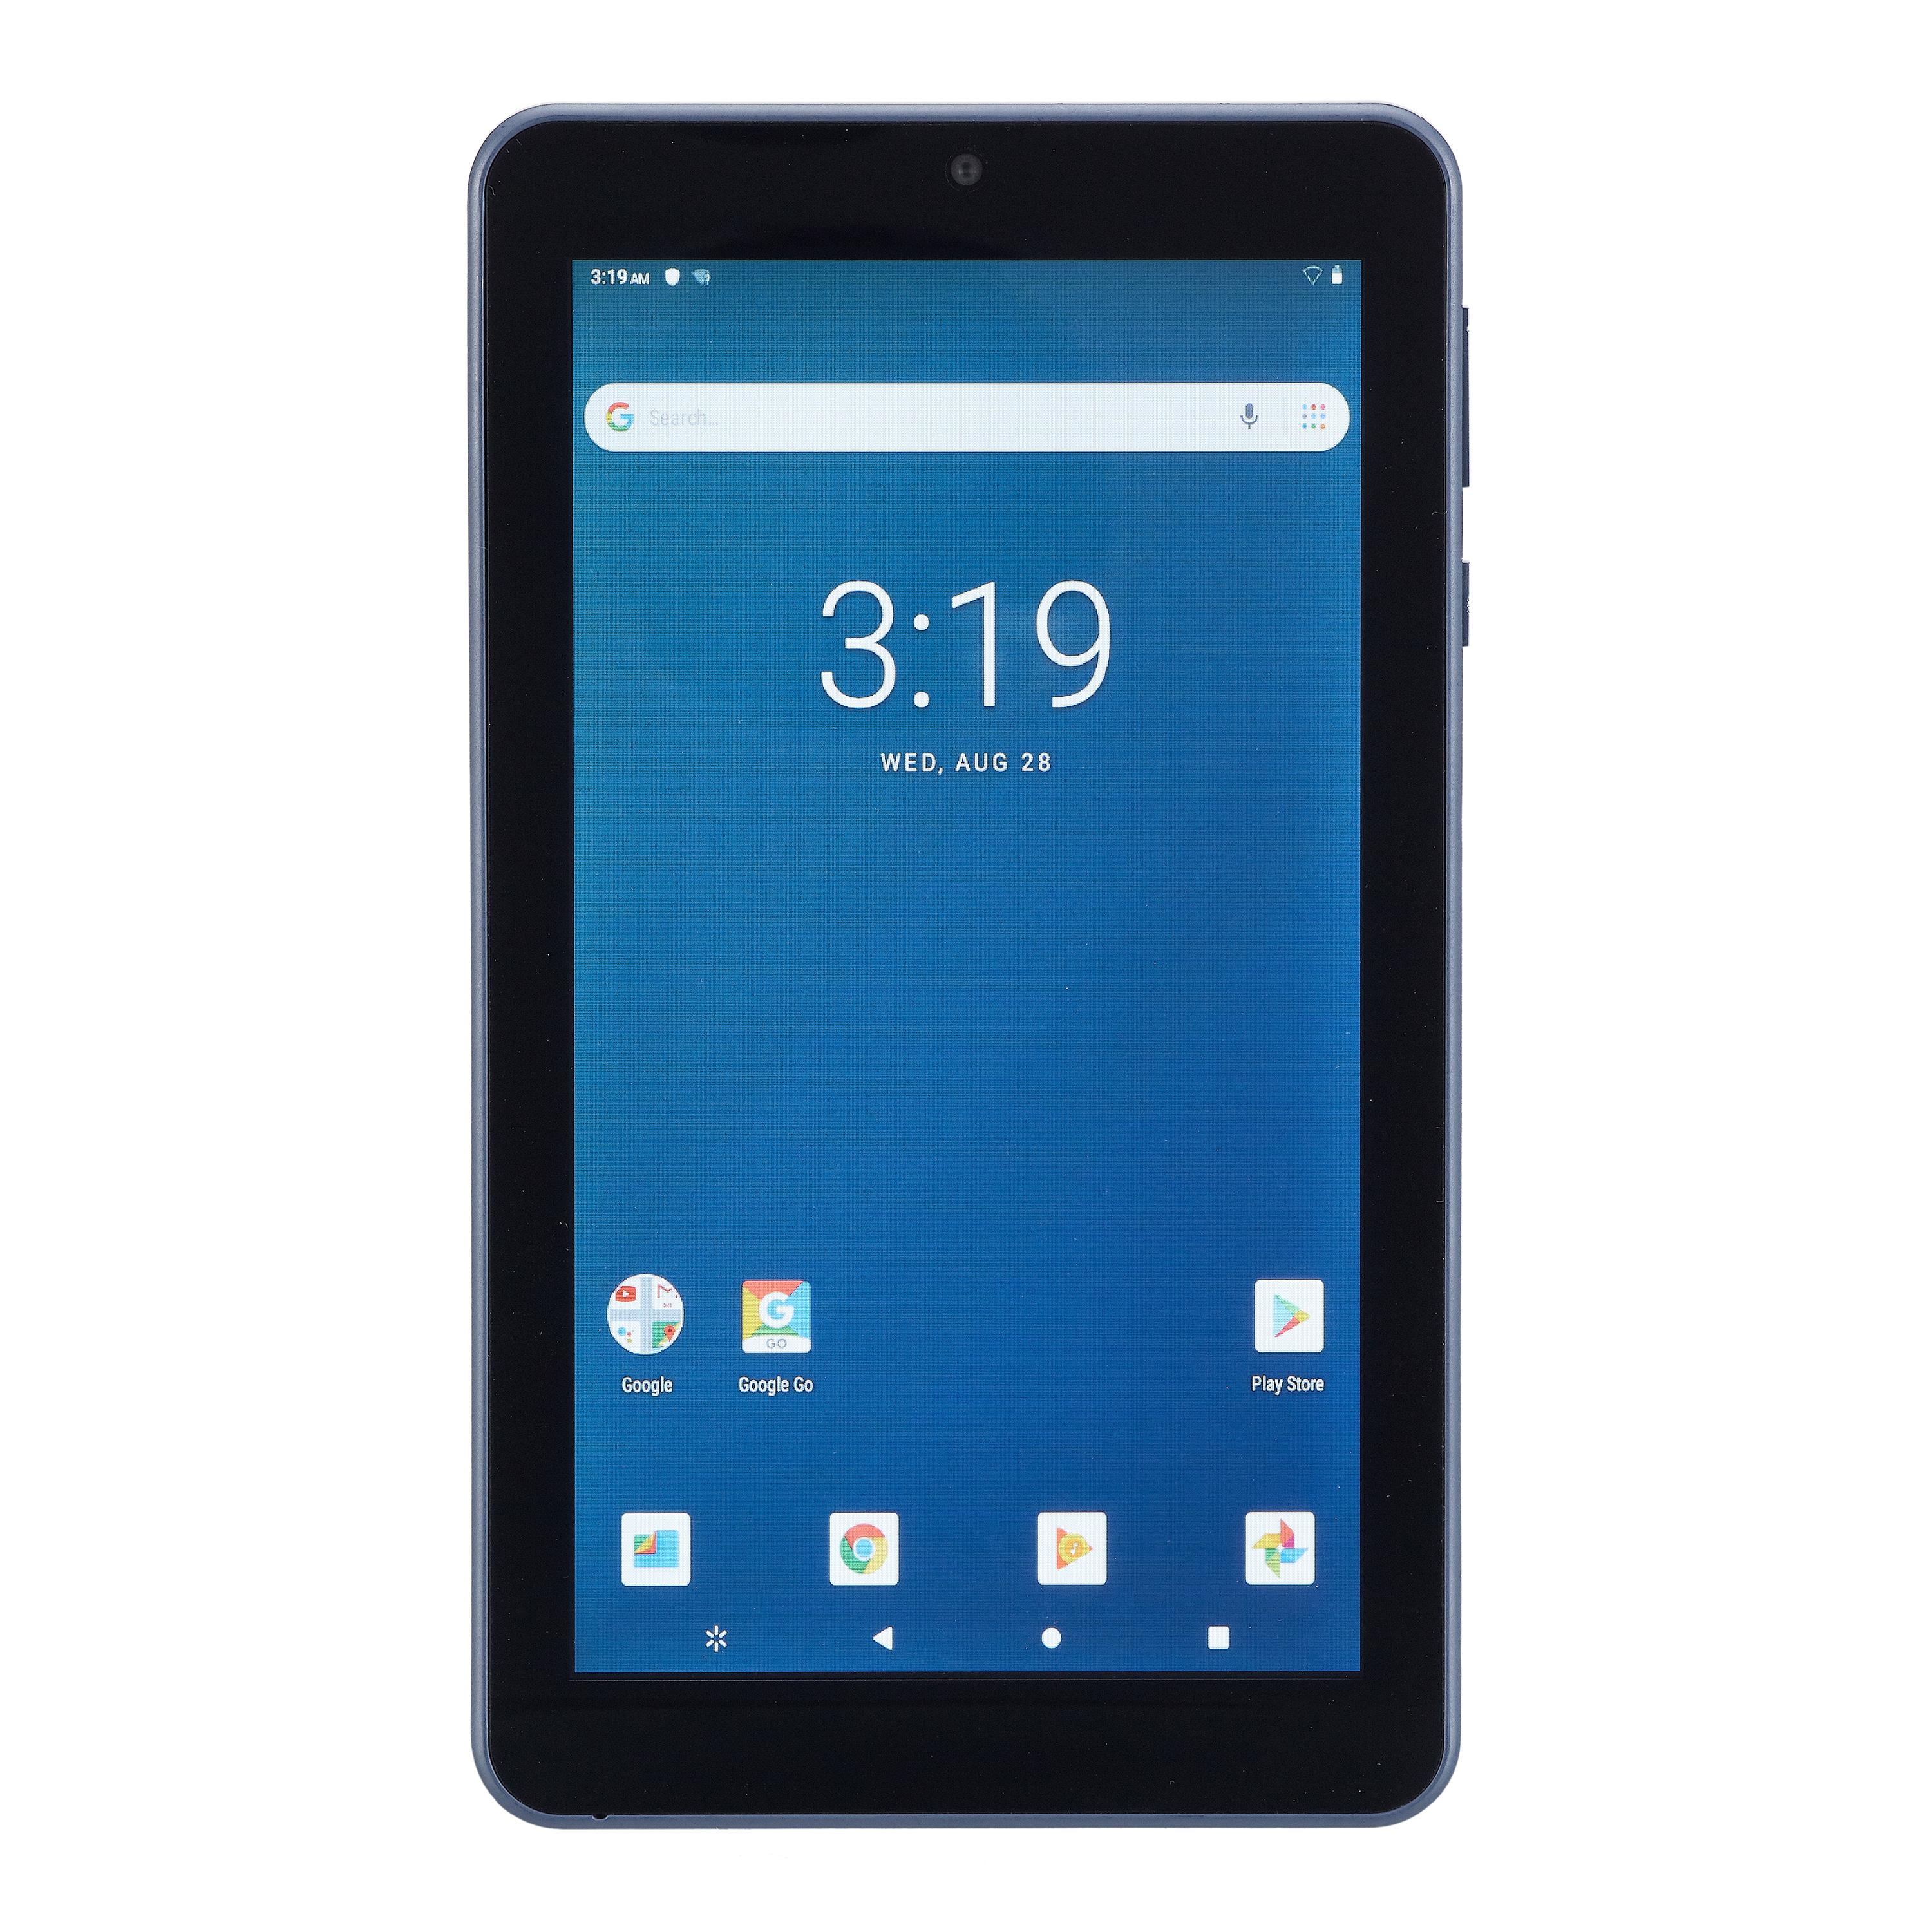 Monumentaal Zelfgenoegzaamheid probleem onn. 7" Tablet 16GB Android- Bonus $10 off Walmart eBooks Included -  Walmart.com